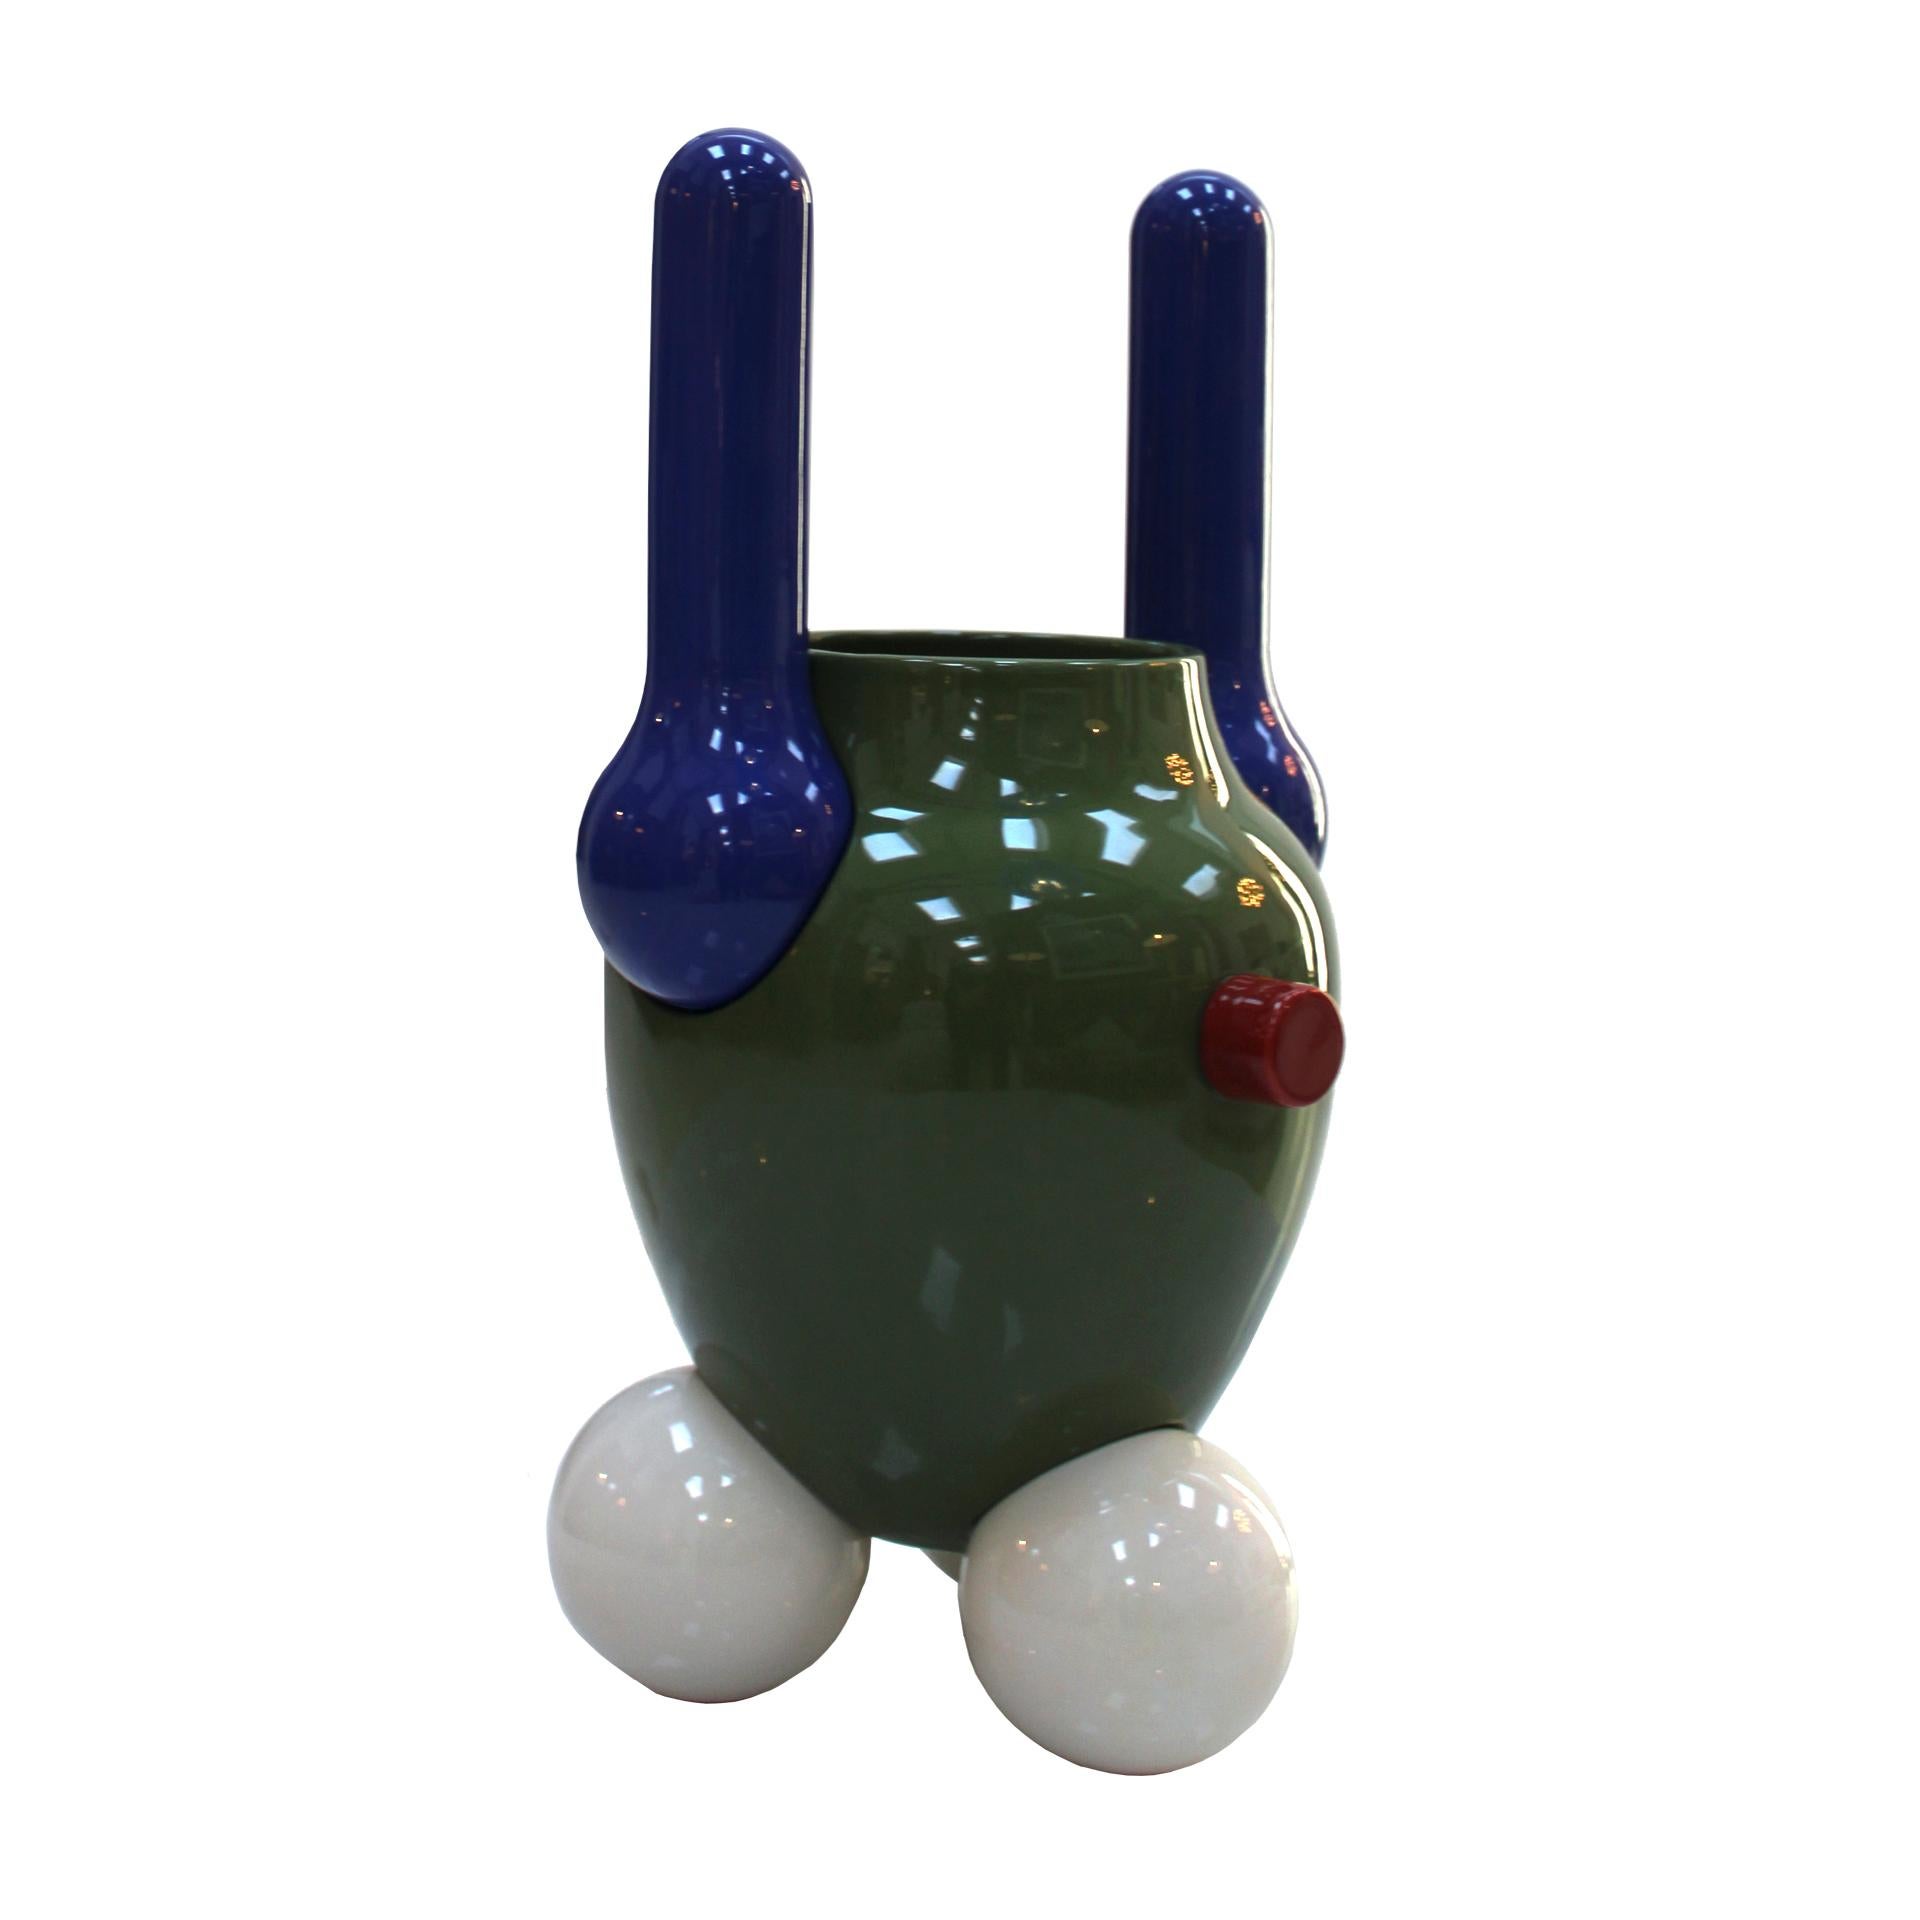 Zeitgenössische Vase, handgefertigt in mehreren Stücken, aus emaillierter Steingutkeramik in verschiedenen Farben.
Sie wurden von dem anerkannten Spanier Jaime Hayon entworfen und sind von den Raumschiffen inspiriert, die ins All geschickt werden,